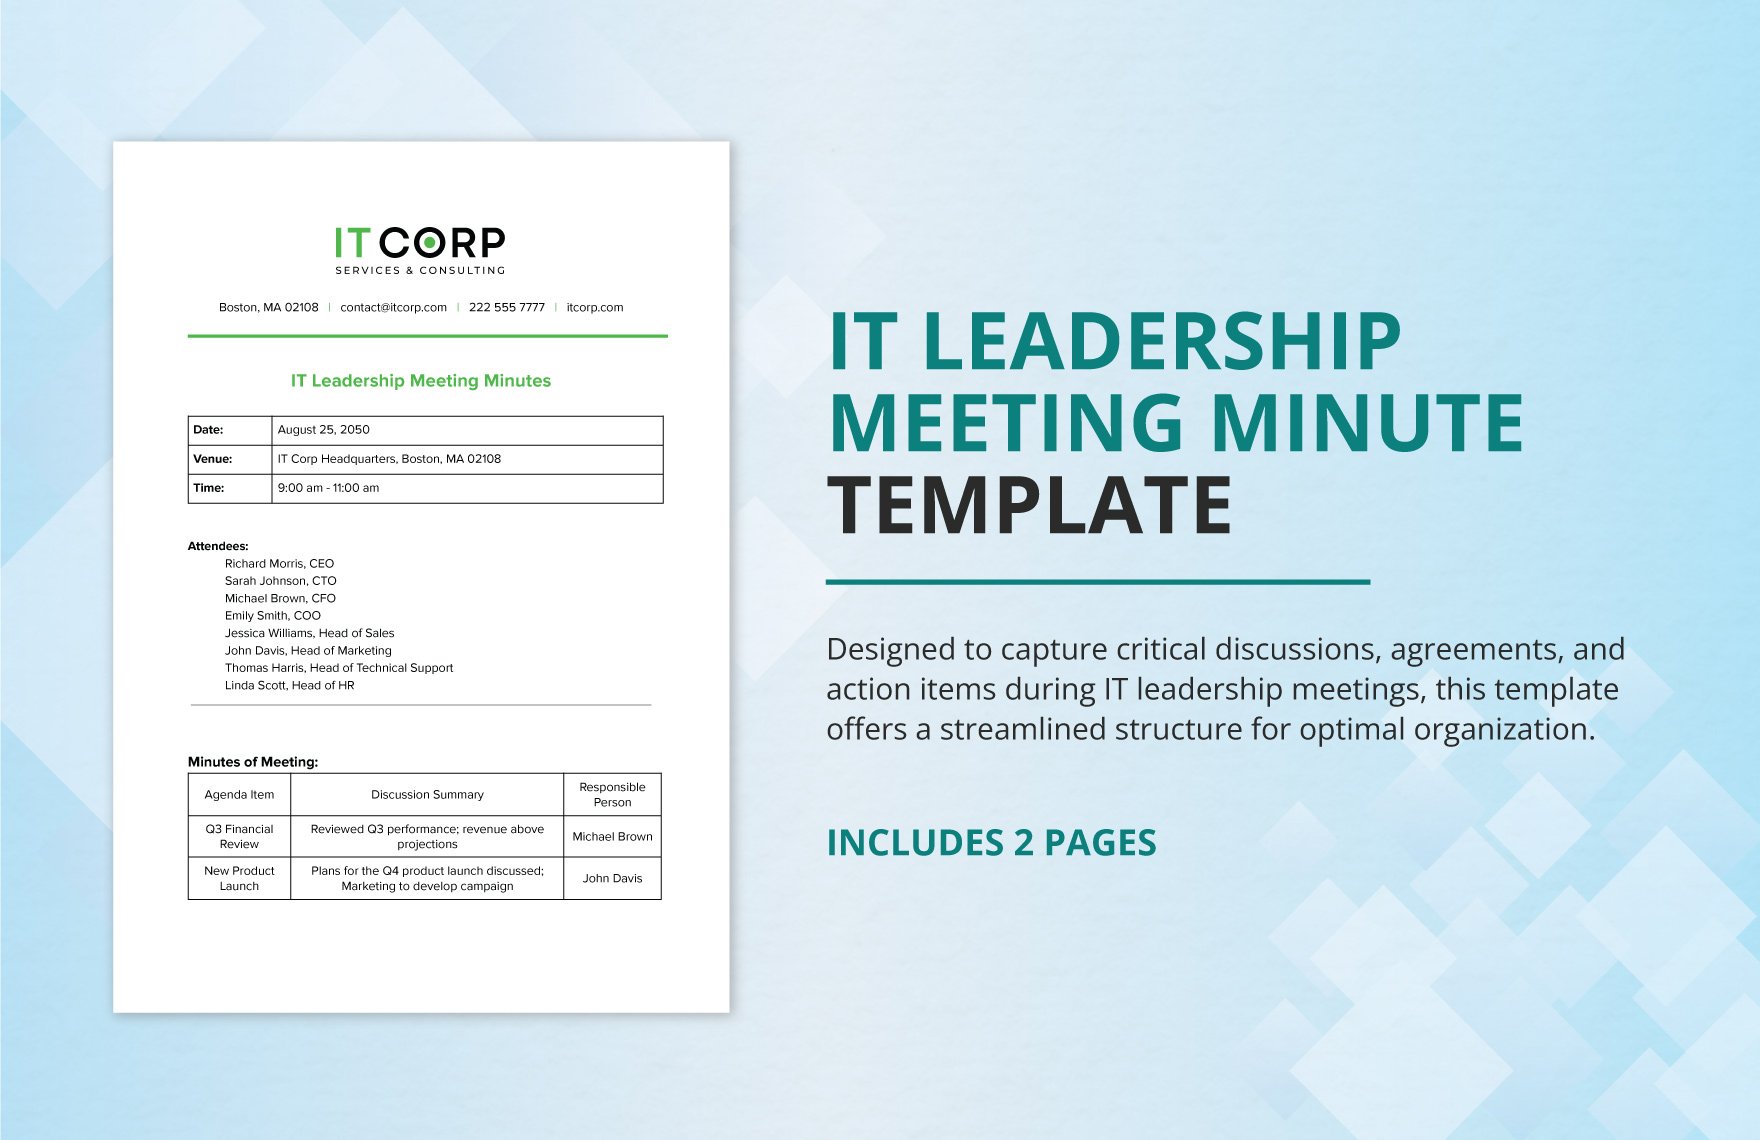 IT Leadership Meeting Minute Template